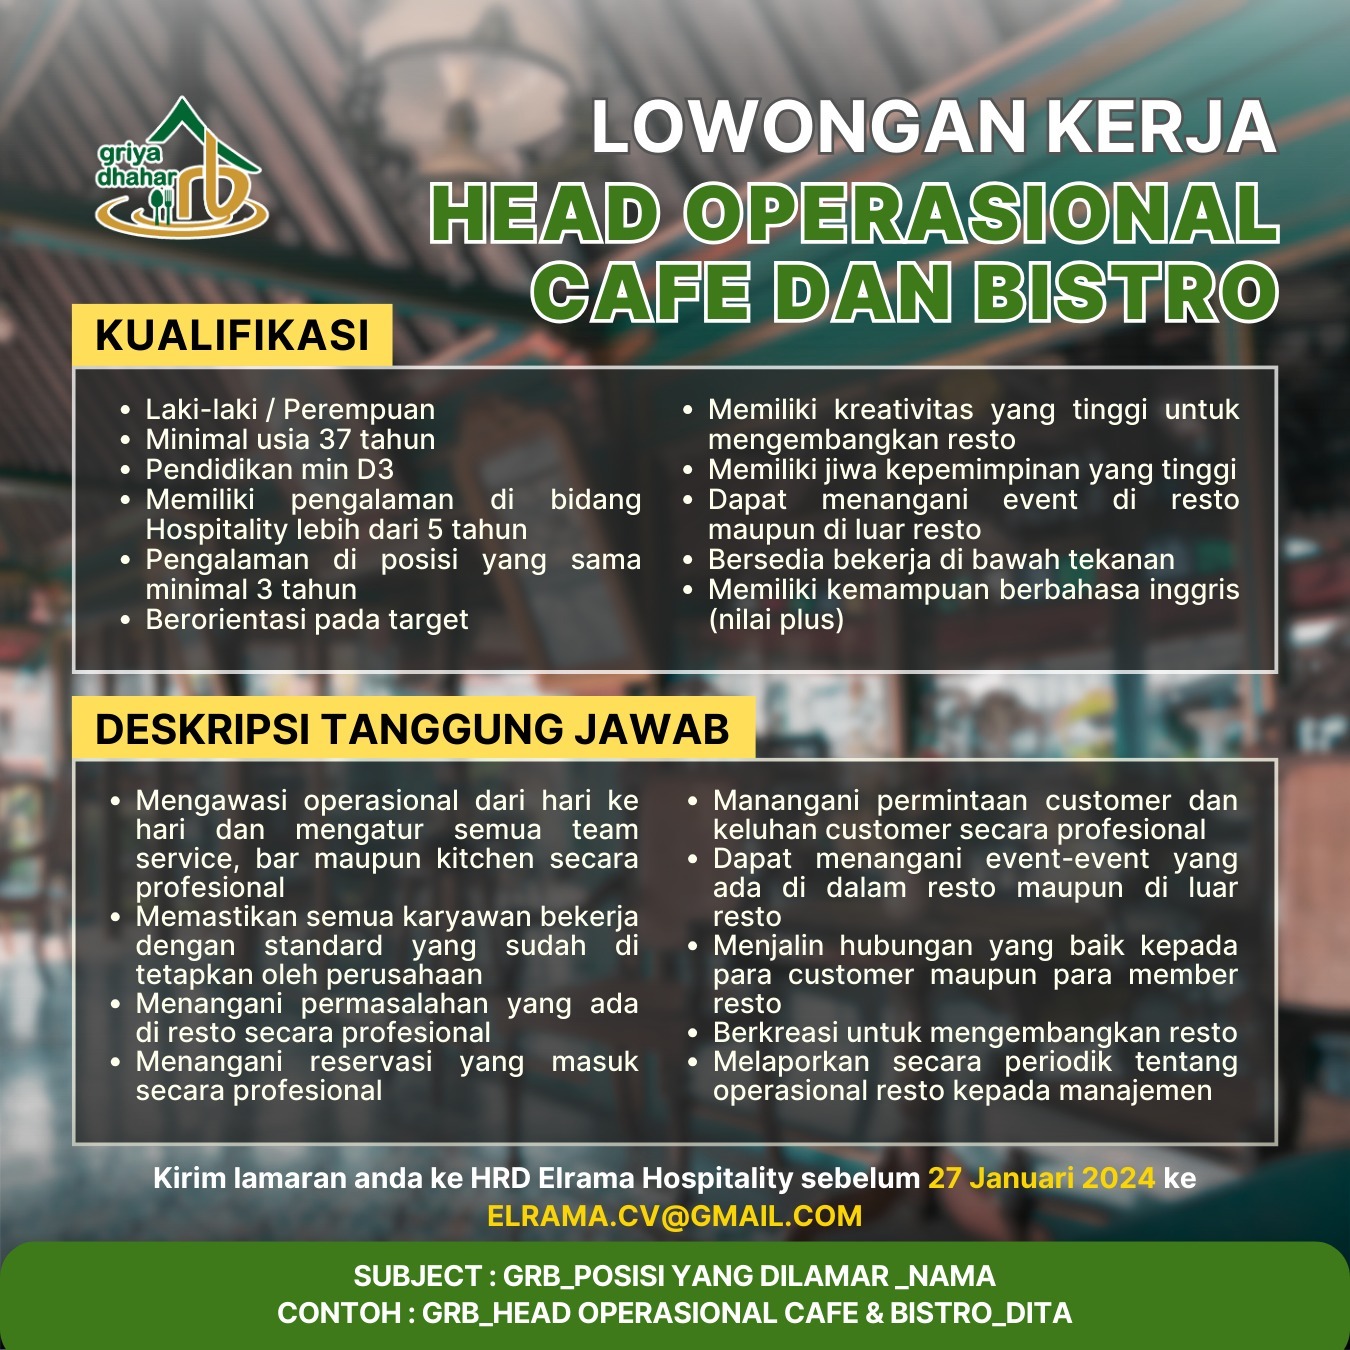 Lowongan Kerja Head Operasional Cafe Dan Bistro Yogyakarta